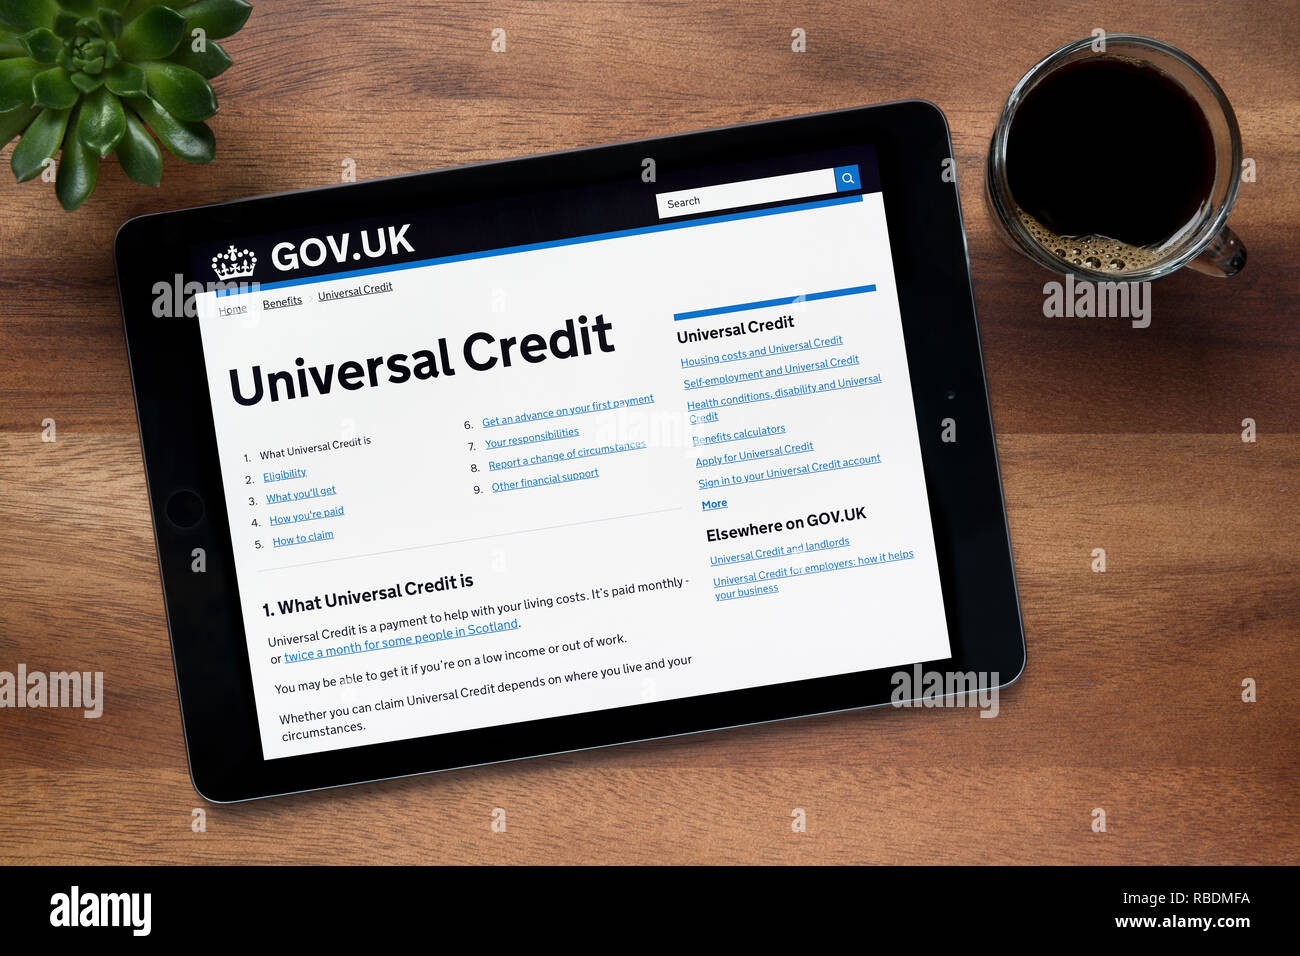 Il Credito Universale sezione del Gov.uk sito è visto su un tablet iPad, appoggiato su un tavolo di legno (solo uso editoriale). Foto Stock